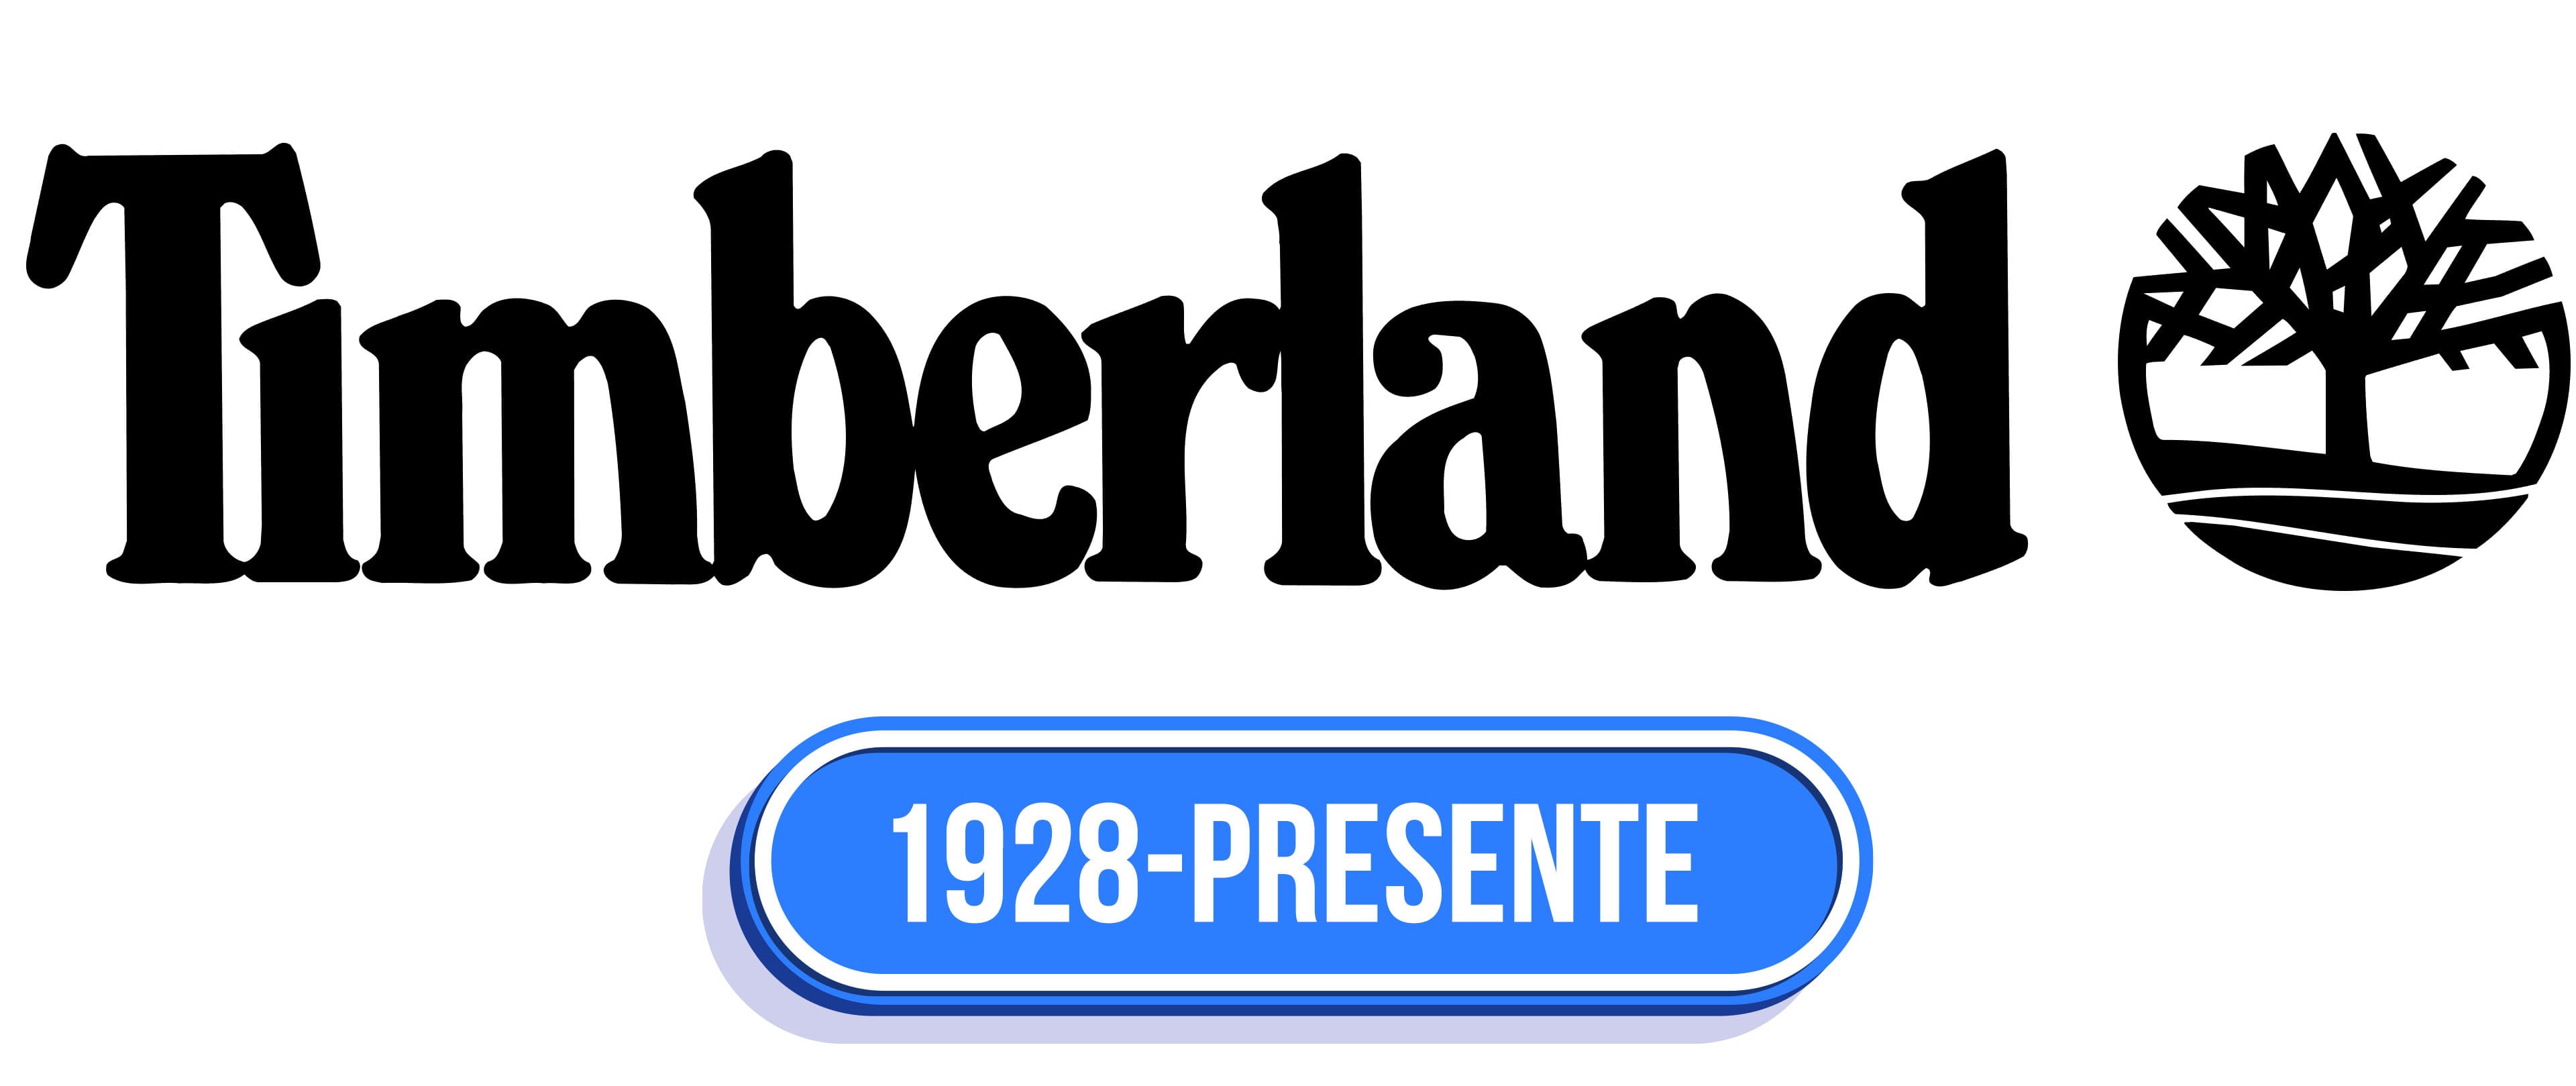 El top 100 imagen que significa el logo de timberland - Abzlocal.mx